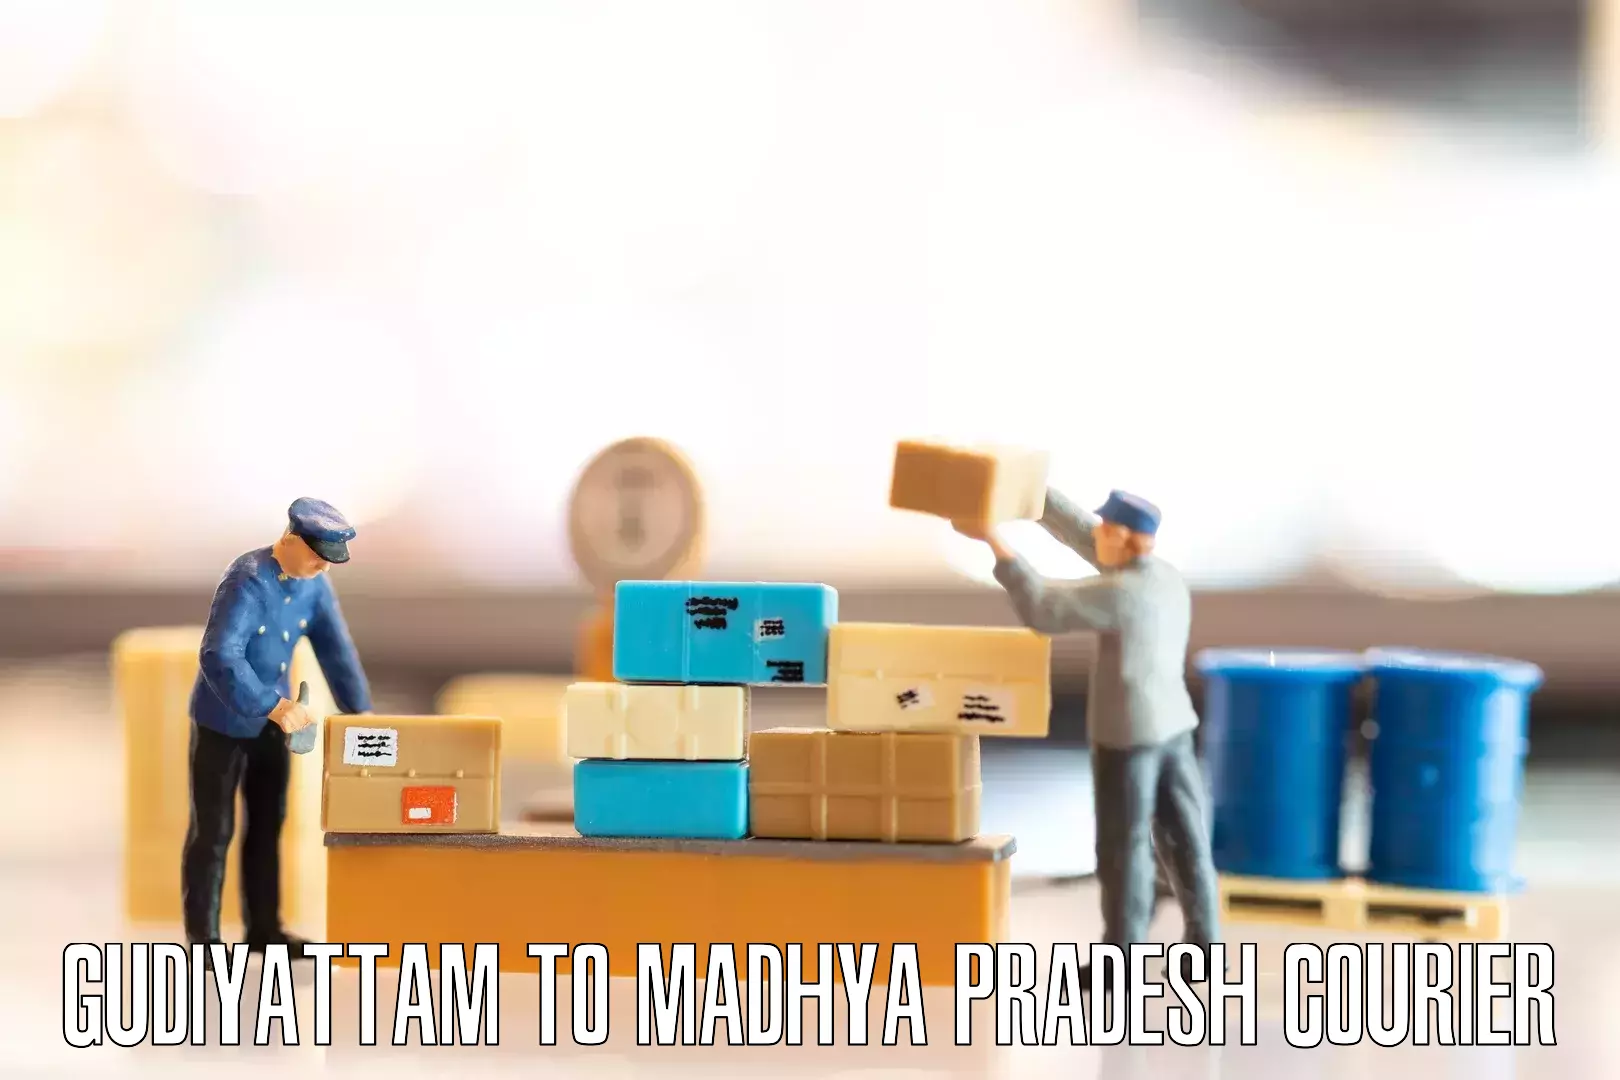 Furniture transport solutions Gudiyattam to Madhya Pradesh